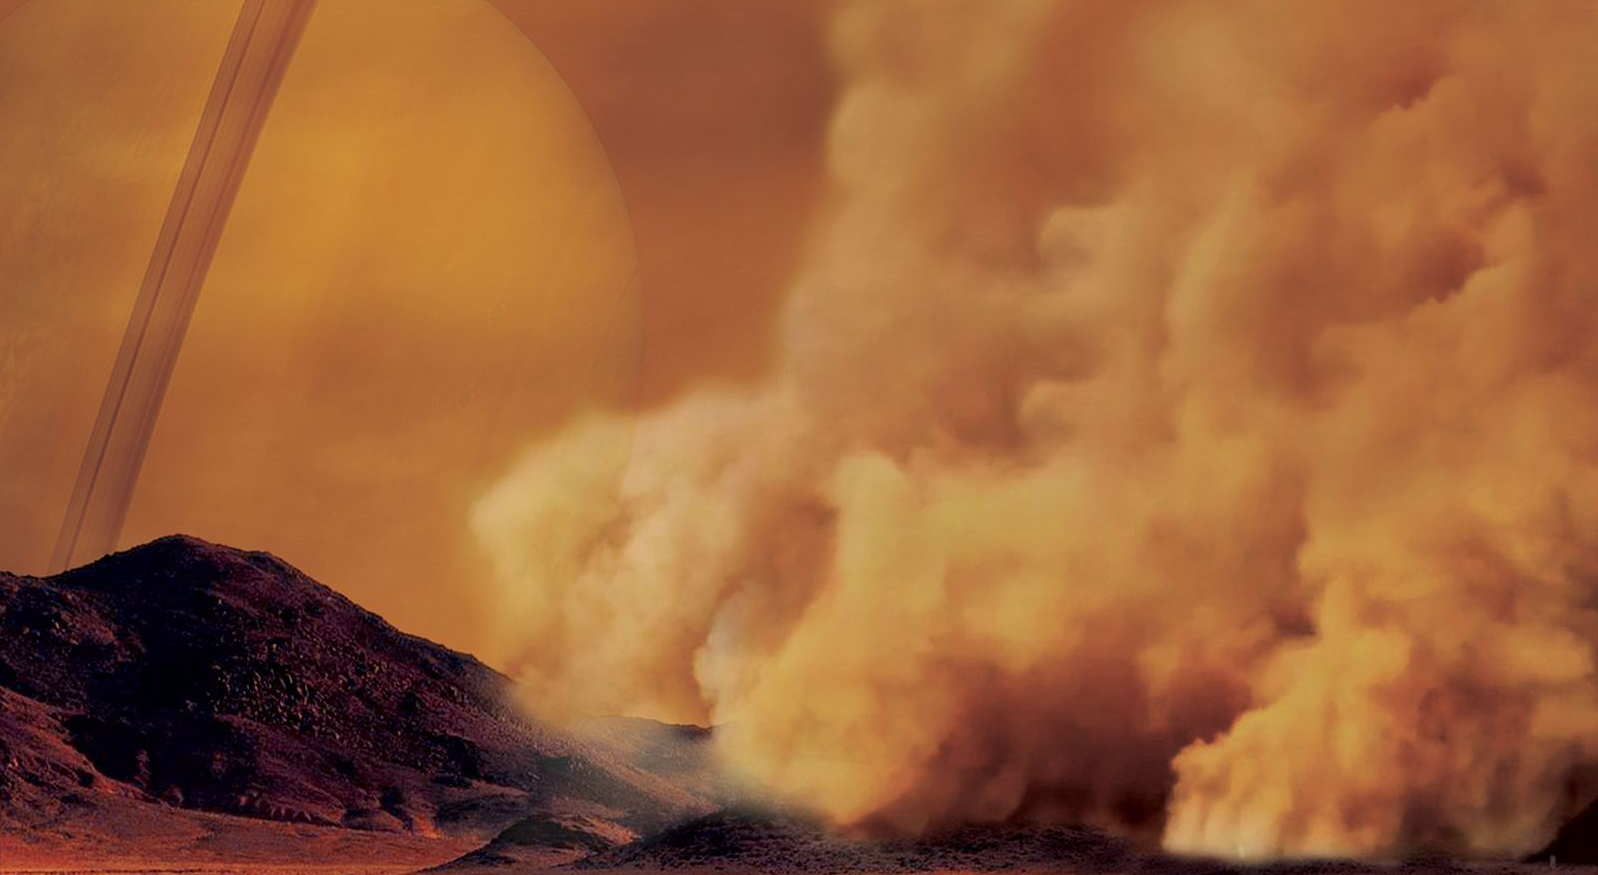 Les premières découvertes les tempêtes de poussière sur Titan démontrent sa ressemblance avec la Terre